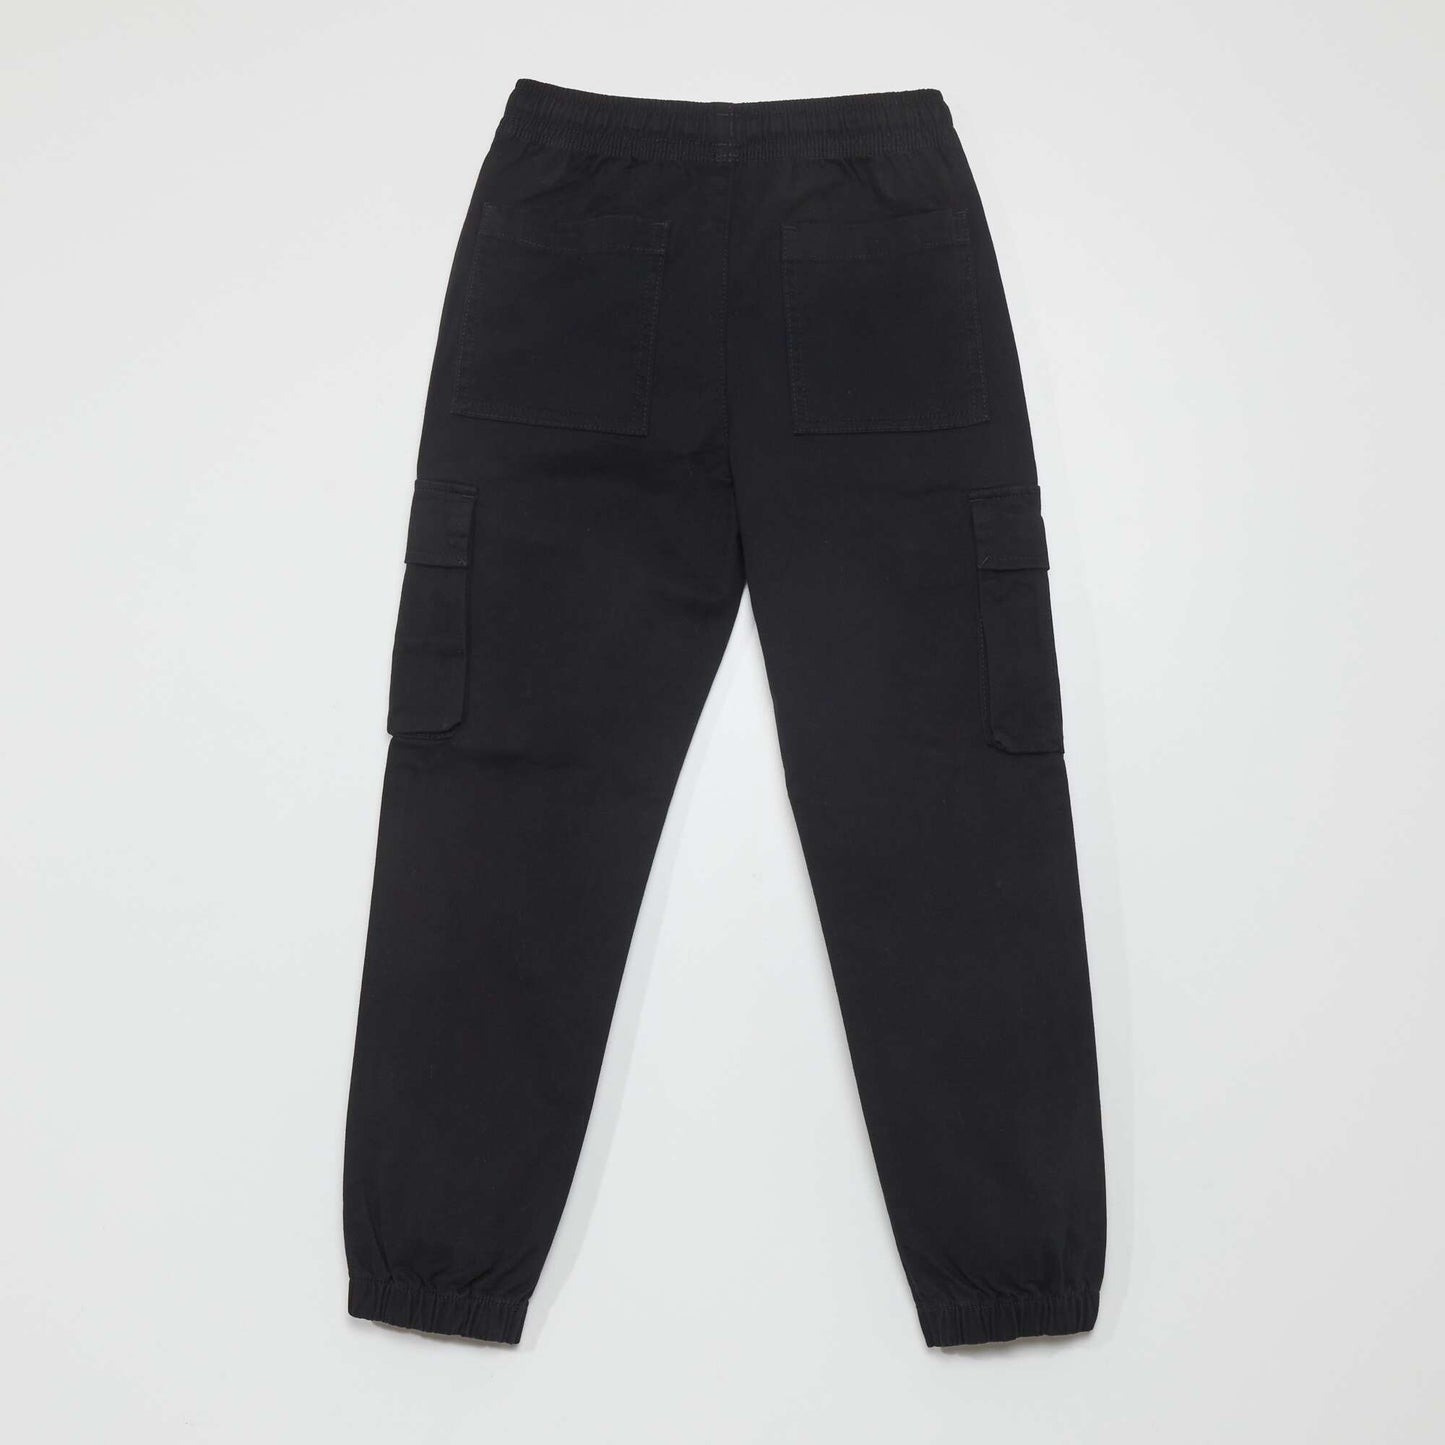 Multi-pocket trousers black